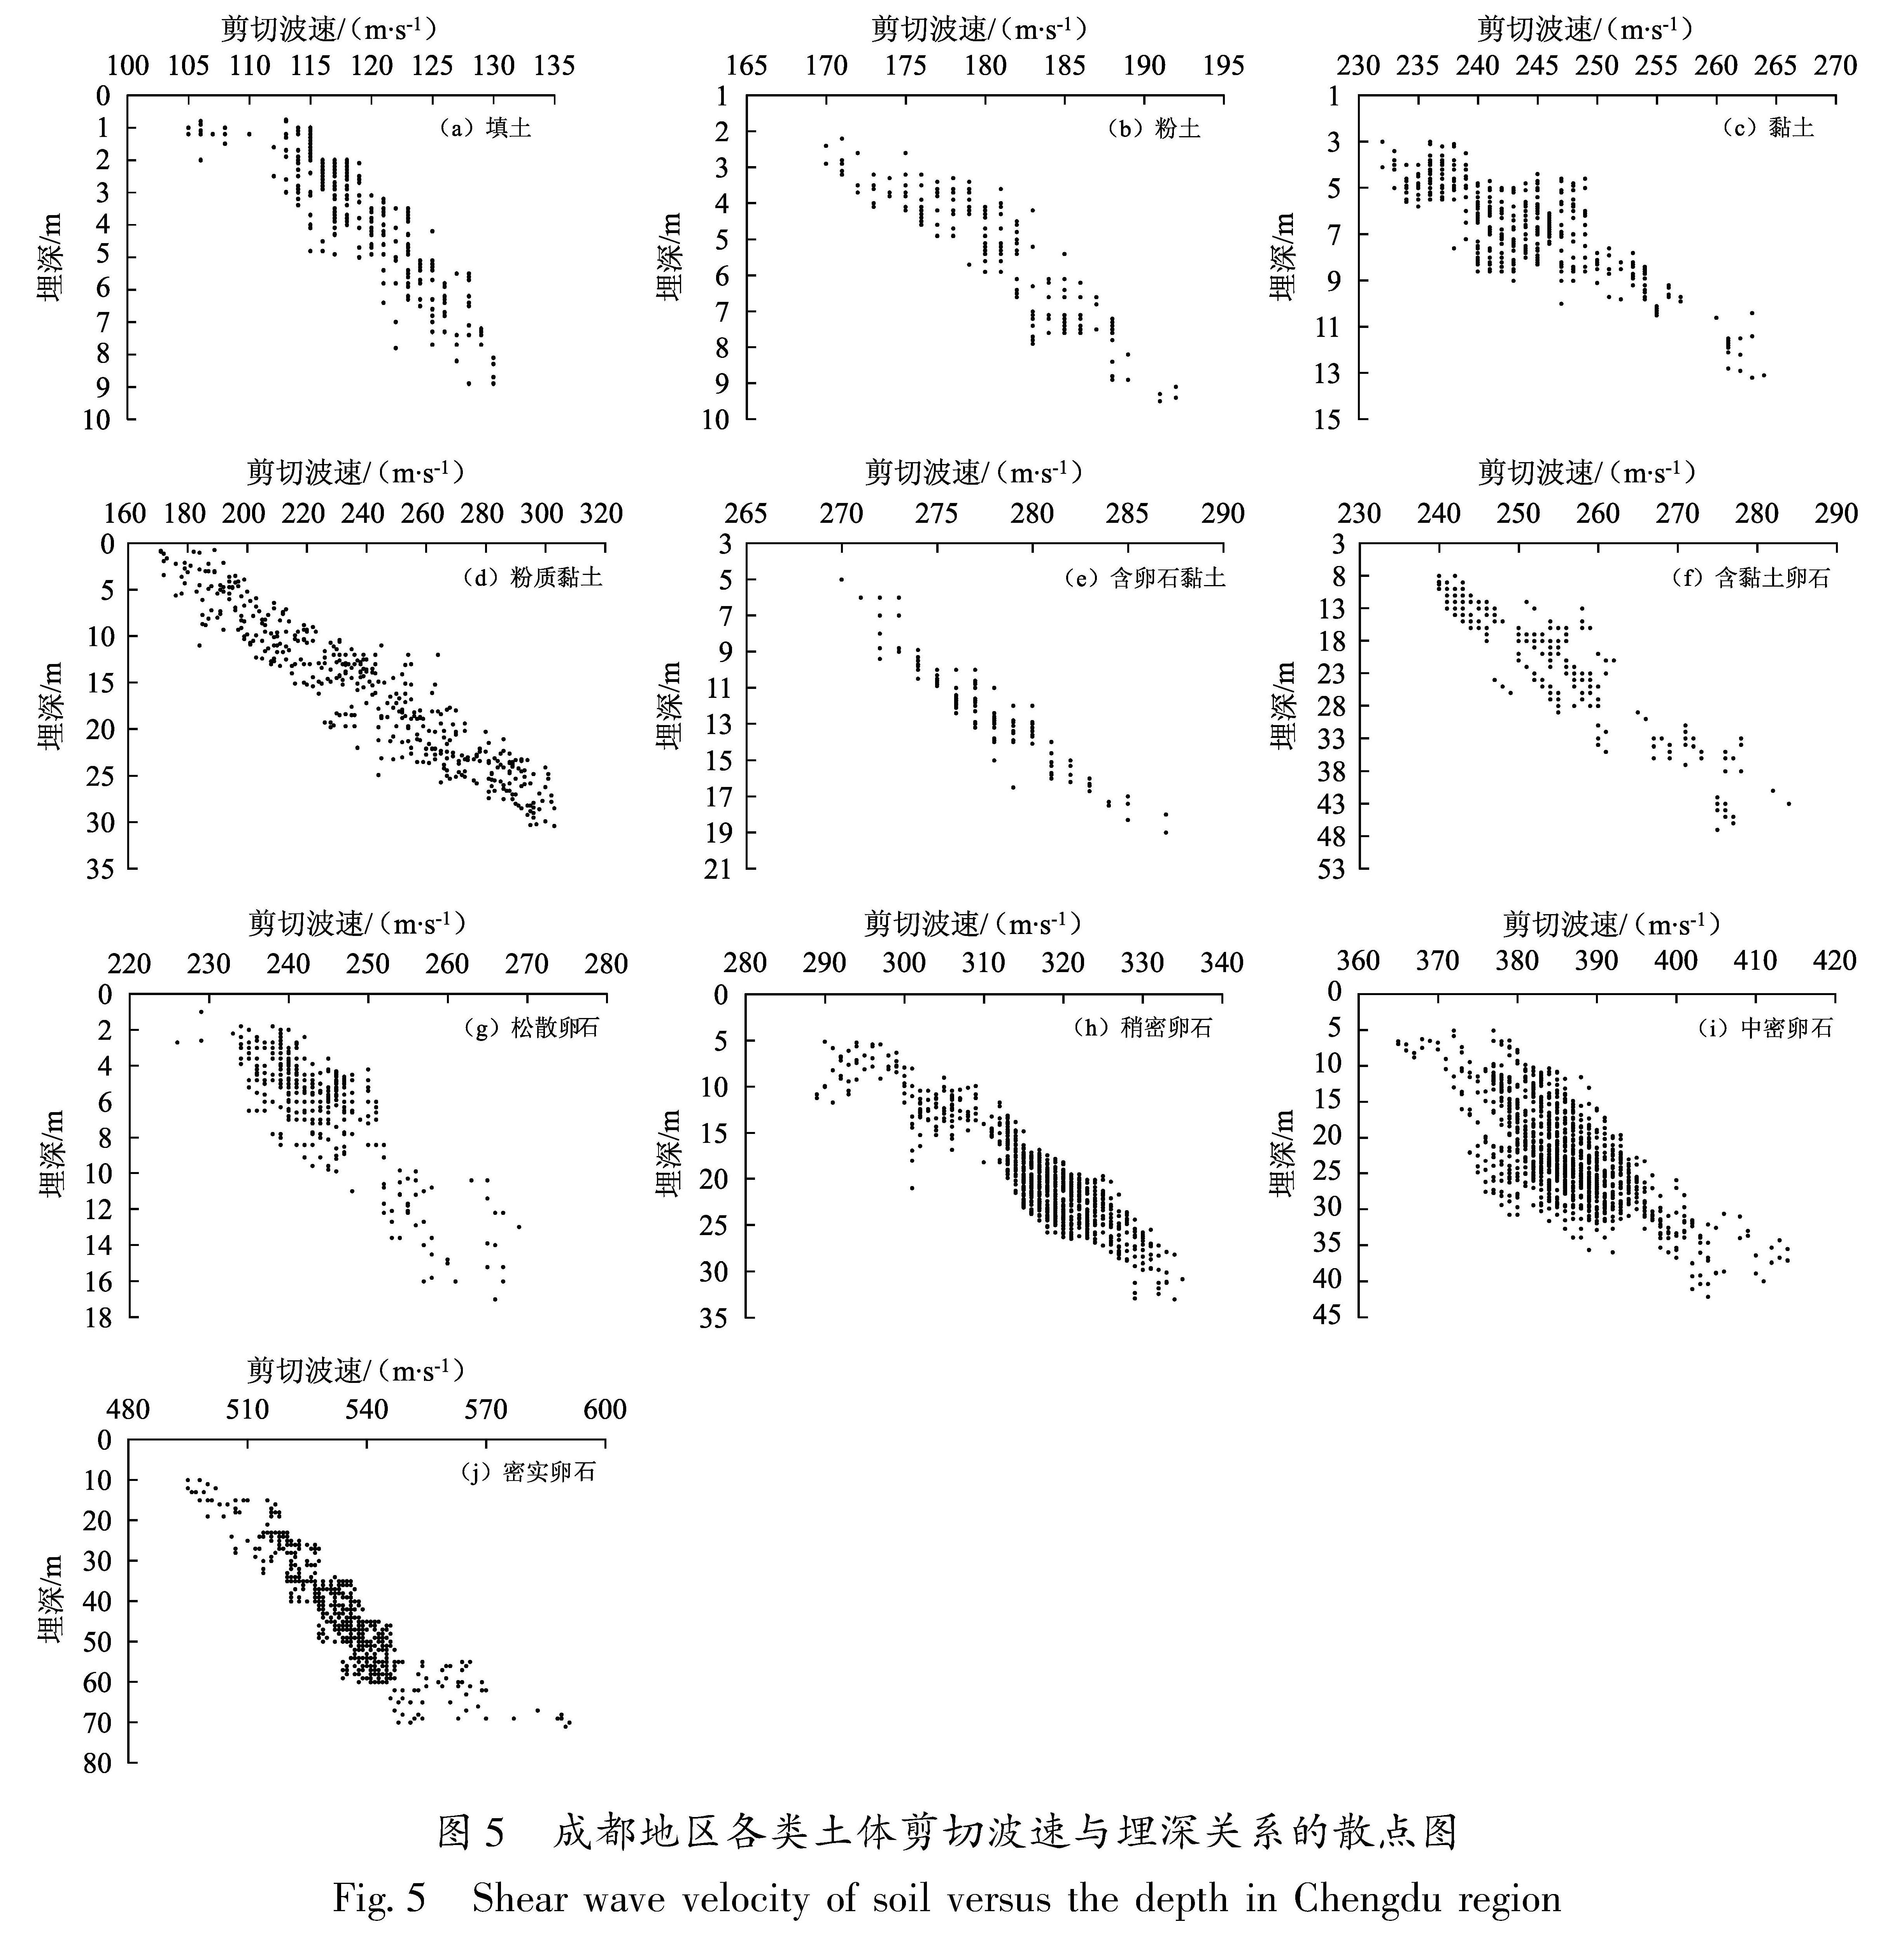 图5 成都地区各类土体剪切波速与埋深关系的散点图<br/>Fig.5 Shear wave velocity of soil versus the depth in Chengdu region